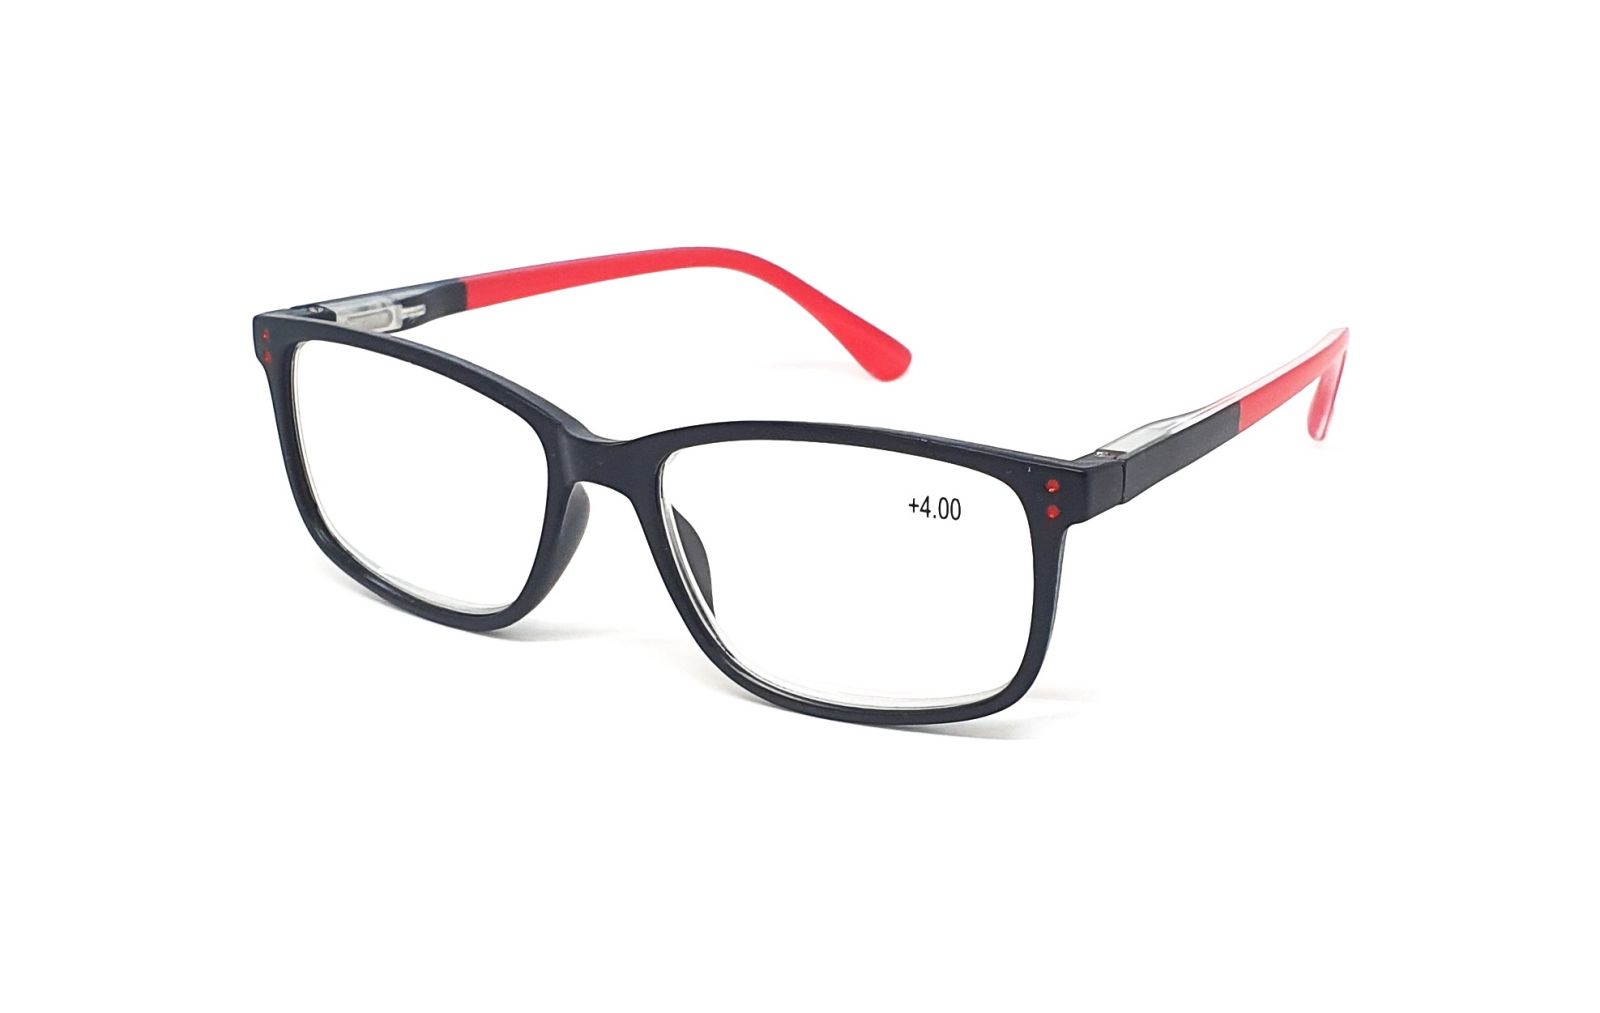 Dioptrické brýle MC2188 +1,00 black/red flex